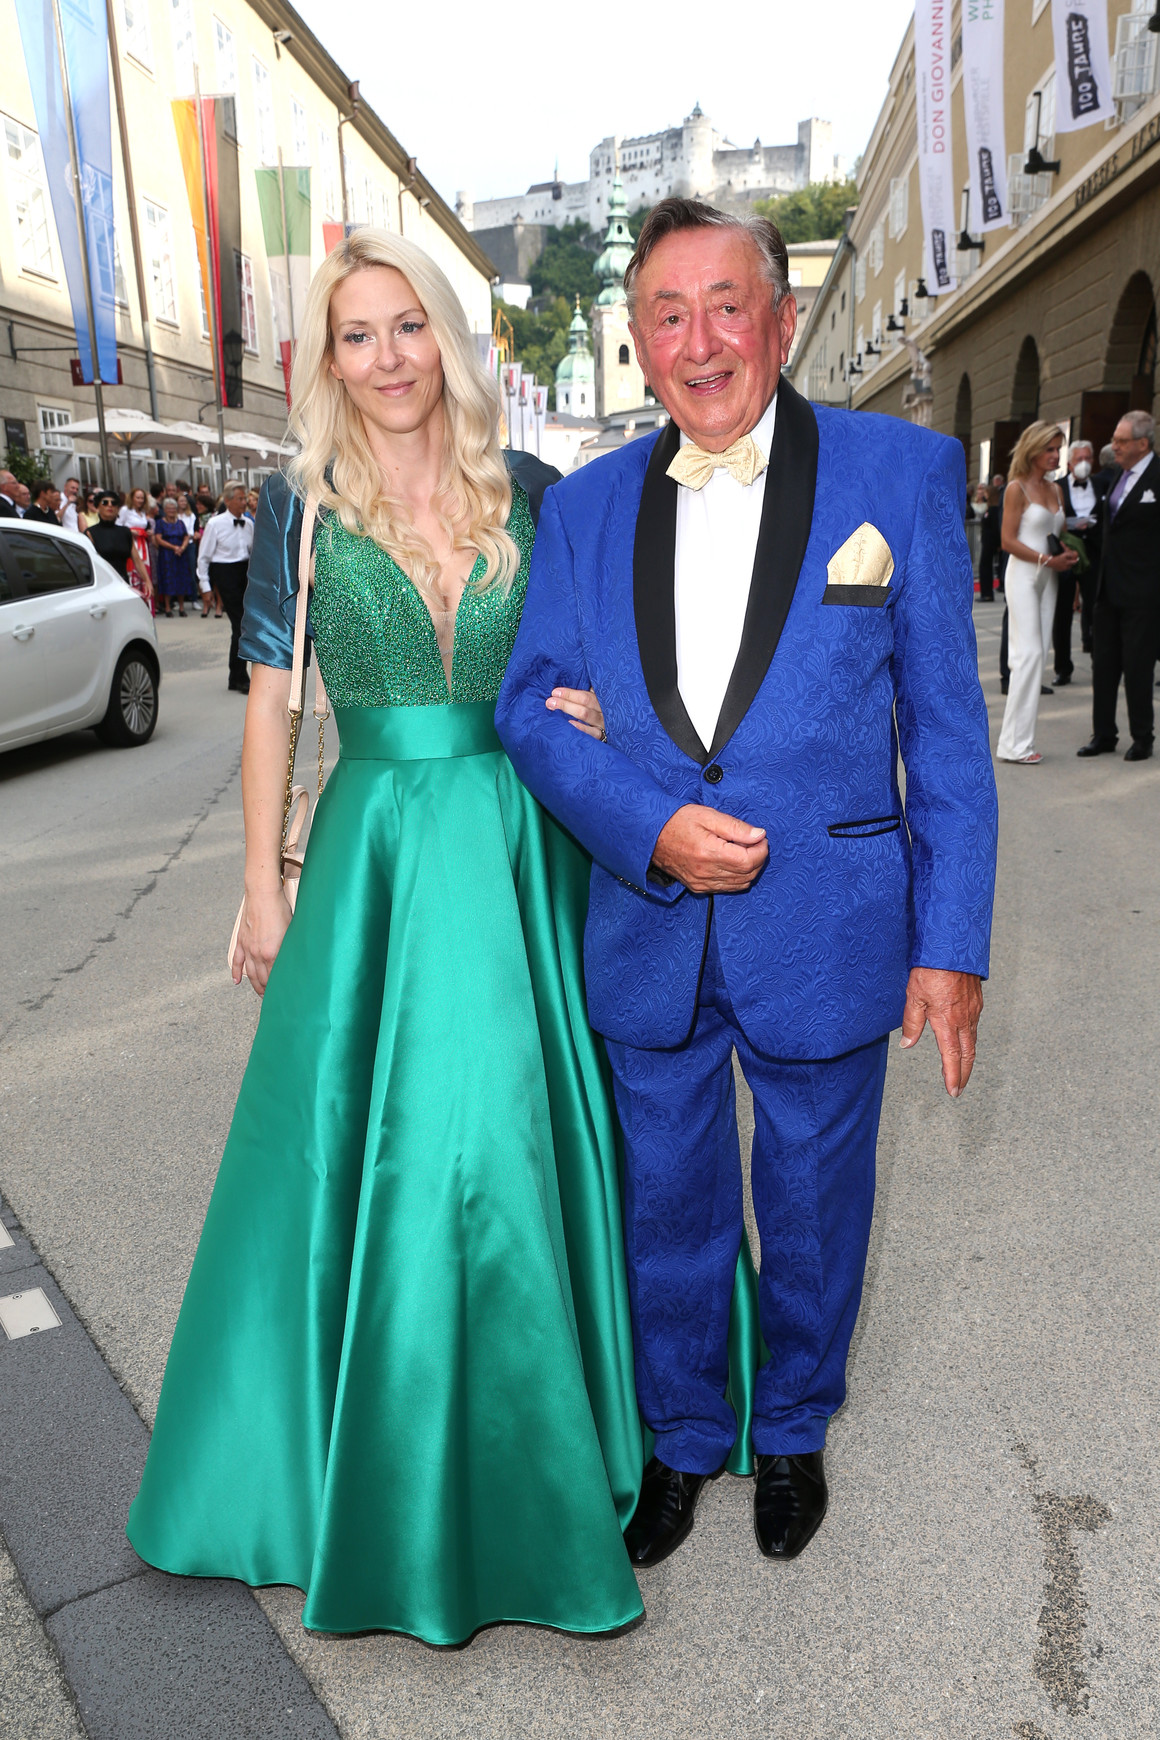 <p>На премиерата в Залцбург присъства още известният австрийски бизнесмен <strong>Рихард Лугнер. </strong>Той бе облечен в син костюм, а съпругата му - в тюркоазена рокля.</p>

<p>Лугнер е предприемач в строителната индустрия, както и бивш независим кандидат за президент. Той завърши четвърти на изборите през 1998 г. </p>
